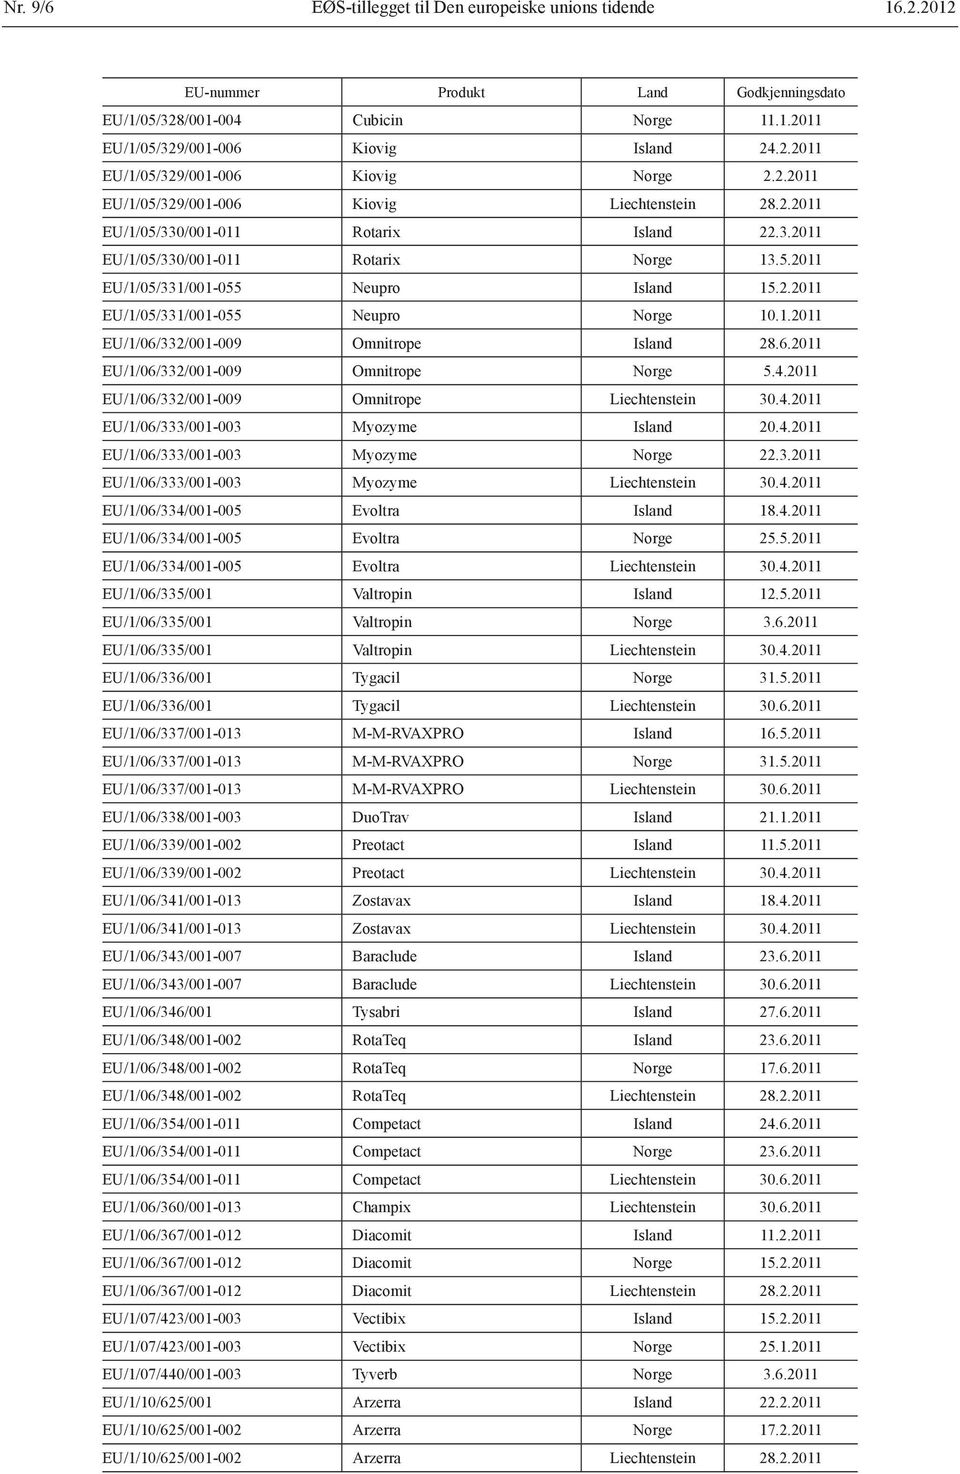 1.2011 EU/1/06/332/001-009 Omnitrope Island 28.6.2011 EU/1/06/332/001-009 Omnitrope Norge 5.4.2011 EU/1/06/332/001-009 Omnitrope Liechtenstein 30.4.2011 EU/1/06/333/001-003 Myozyme Island 20.4.2011 EU/1/06/333/001-003 Myozyme Norge 22.